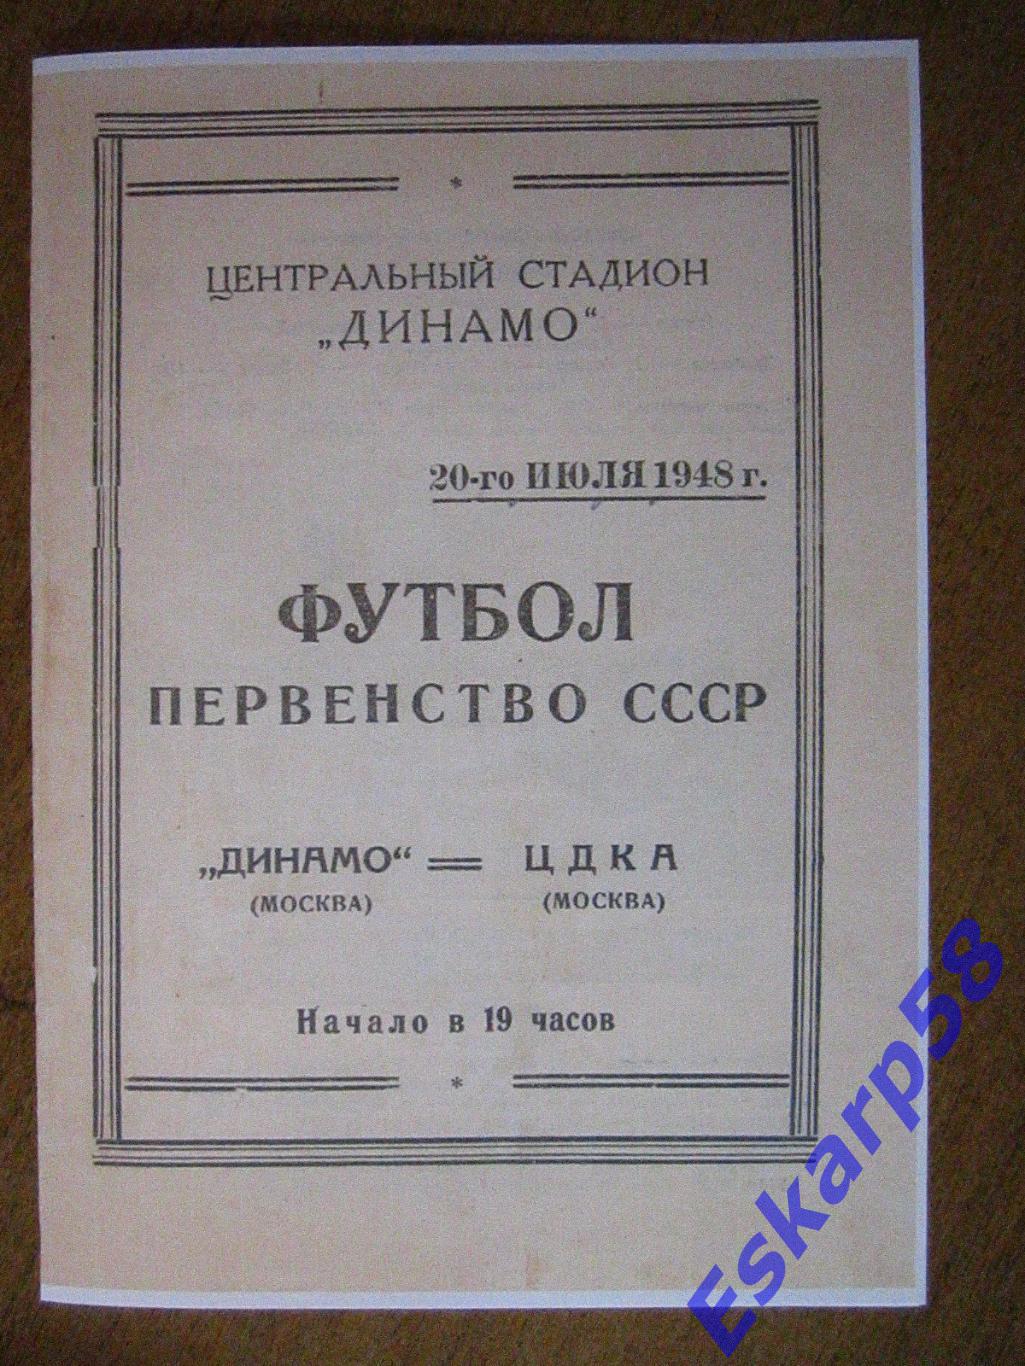 1948.Динамо Москва - ЦДКА. 20.07. Копия